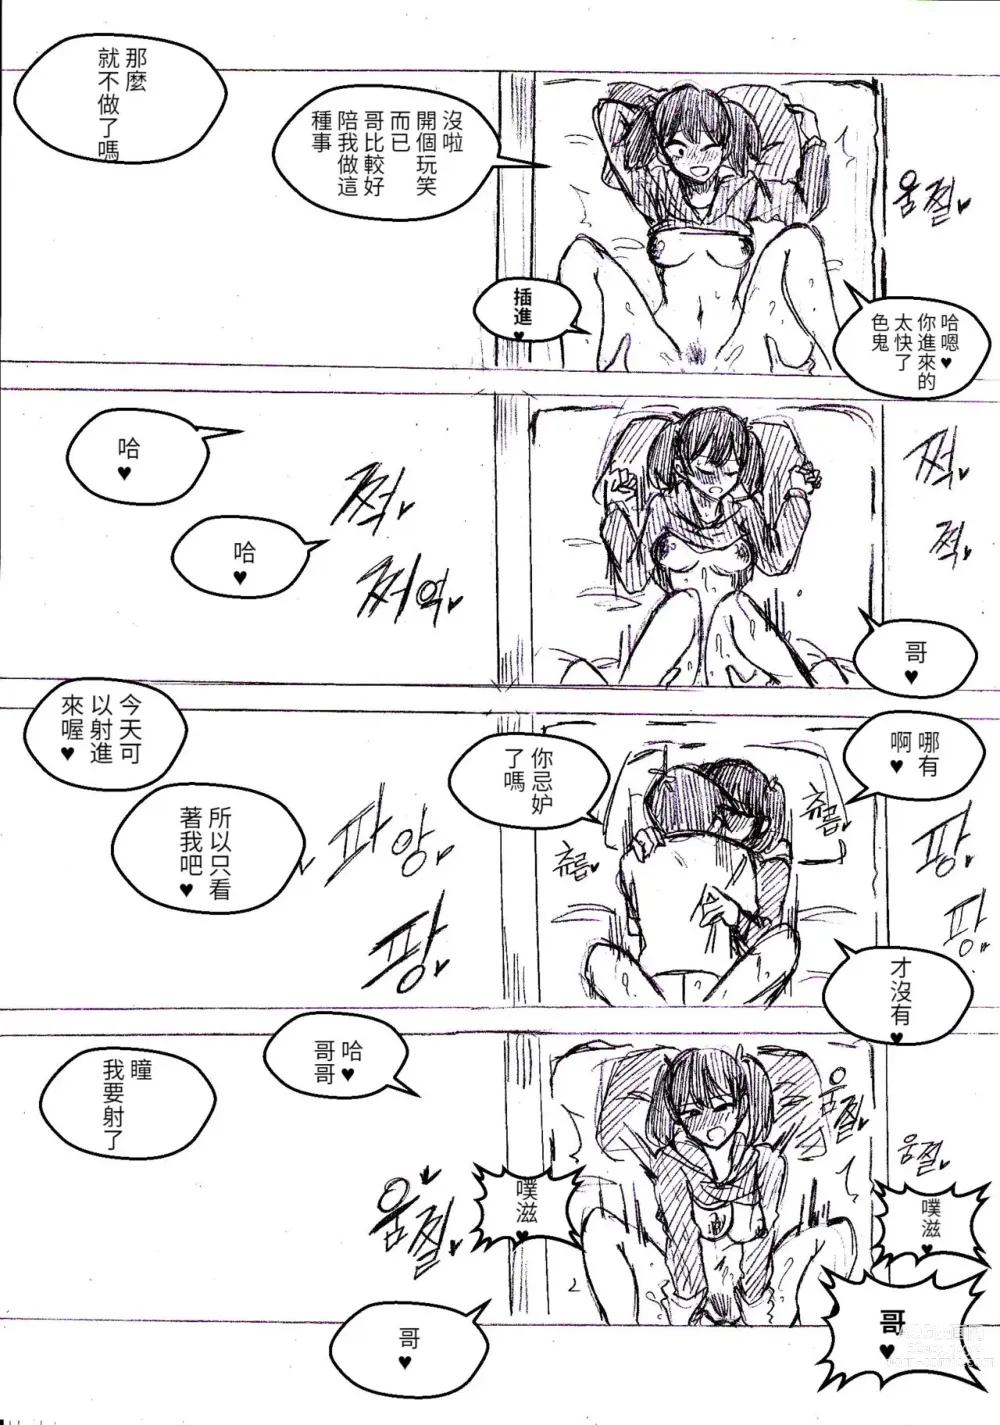 Page 3 of doujinshi 只野兄妹關係很好!